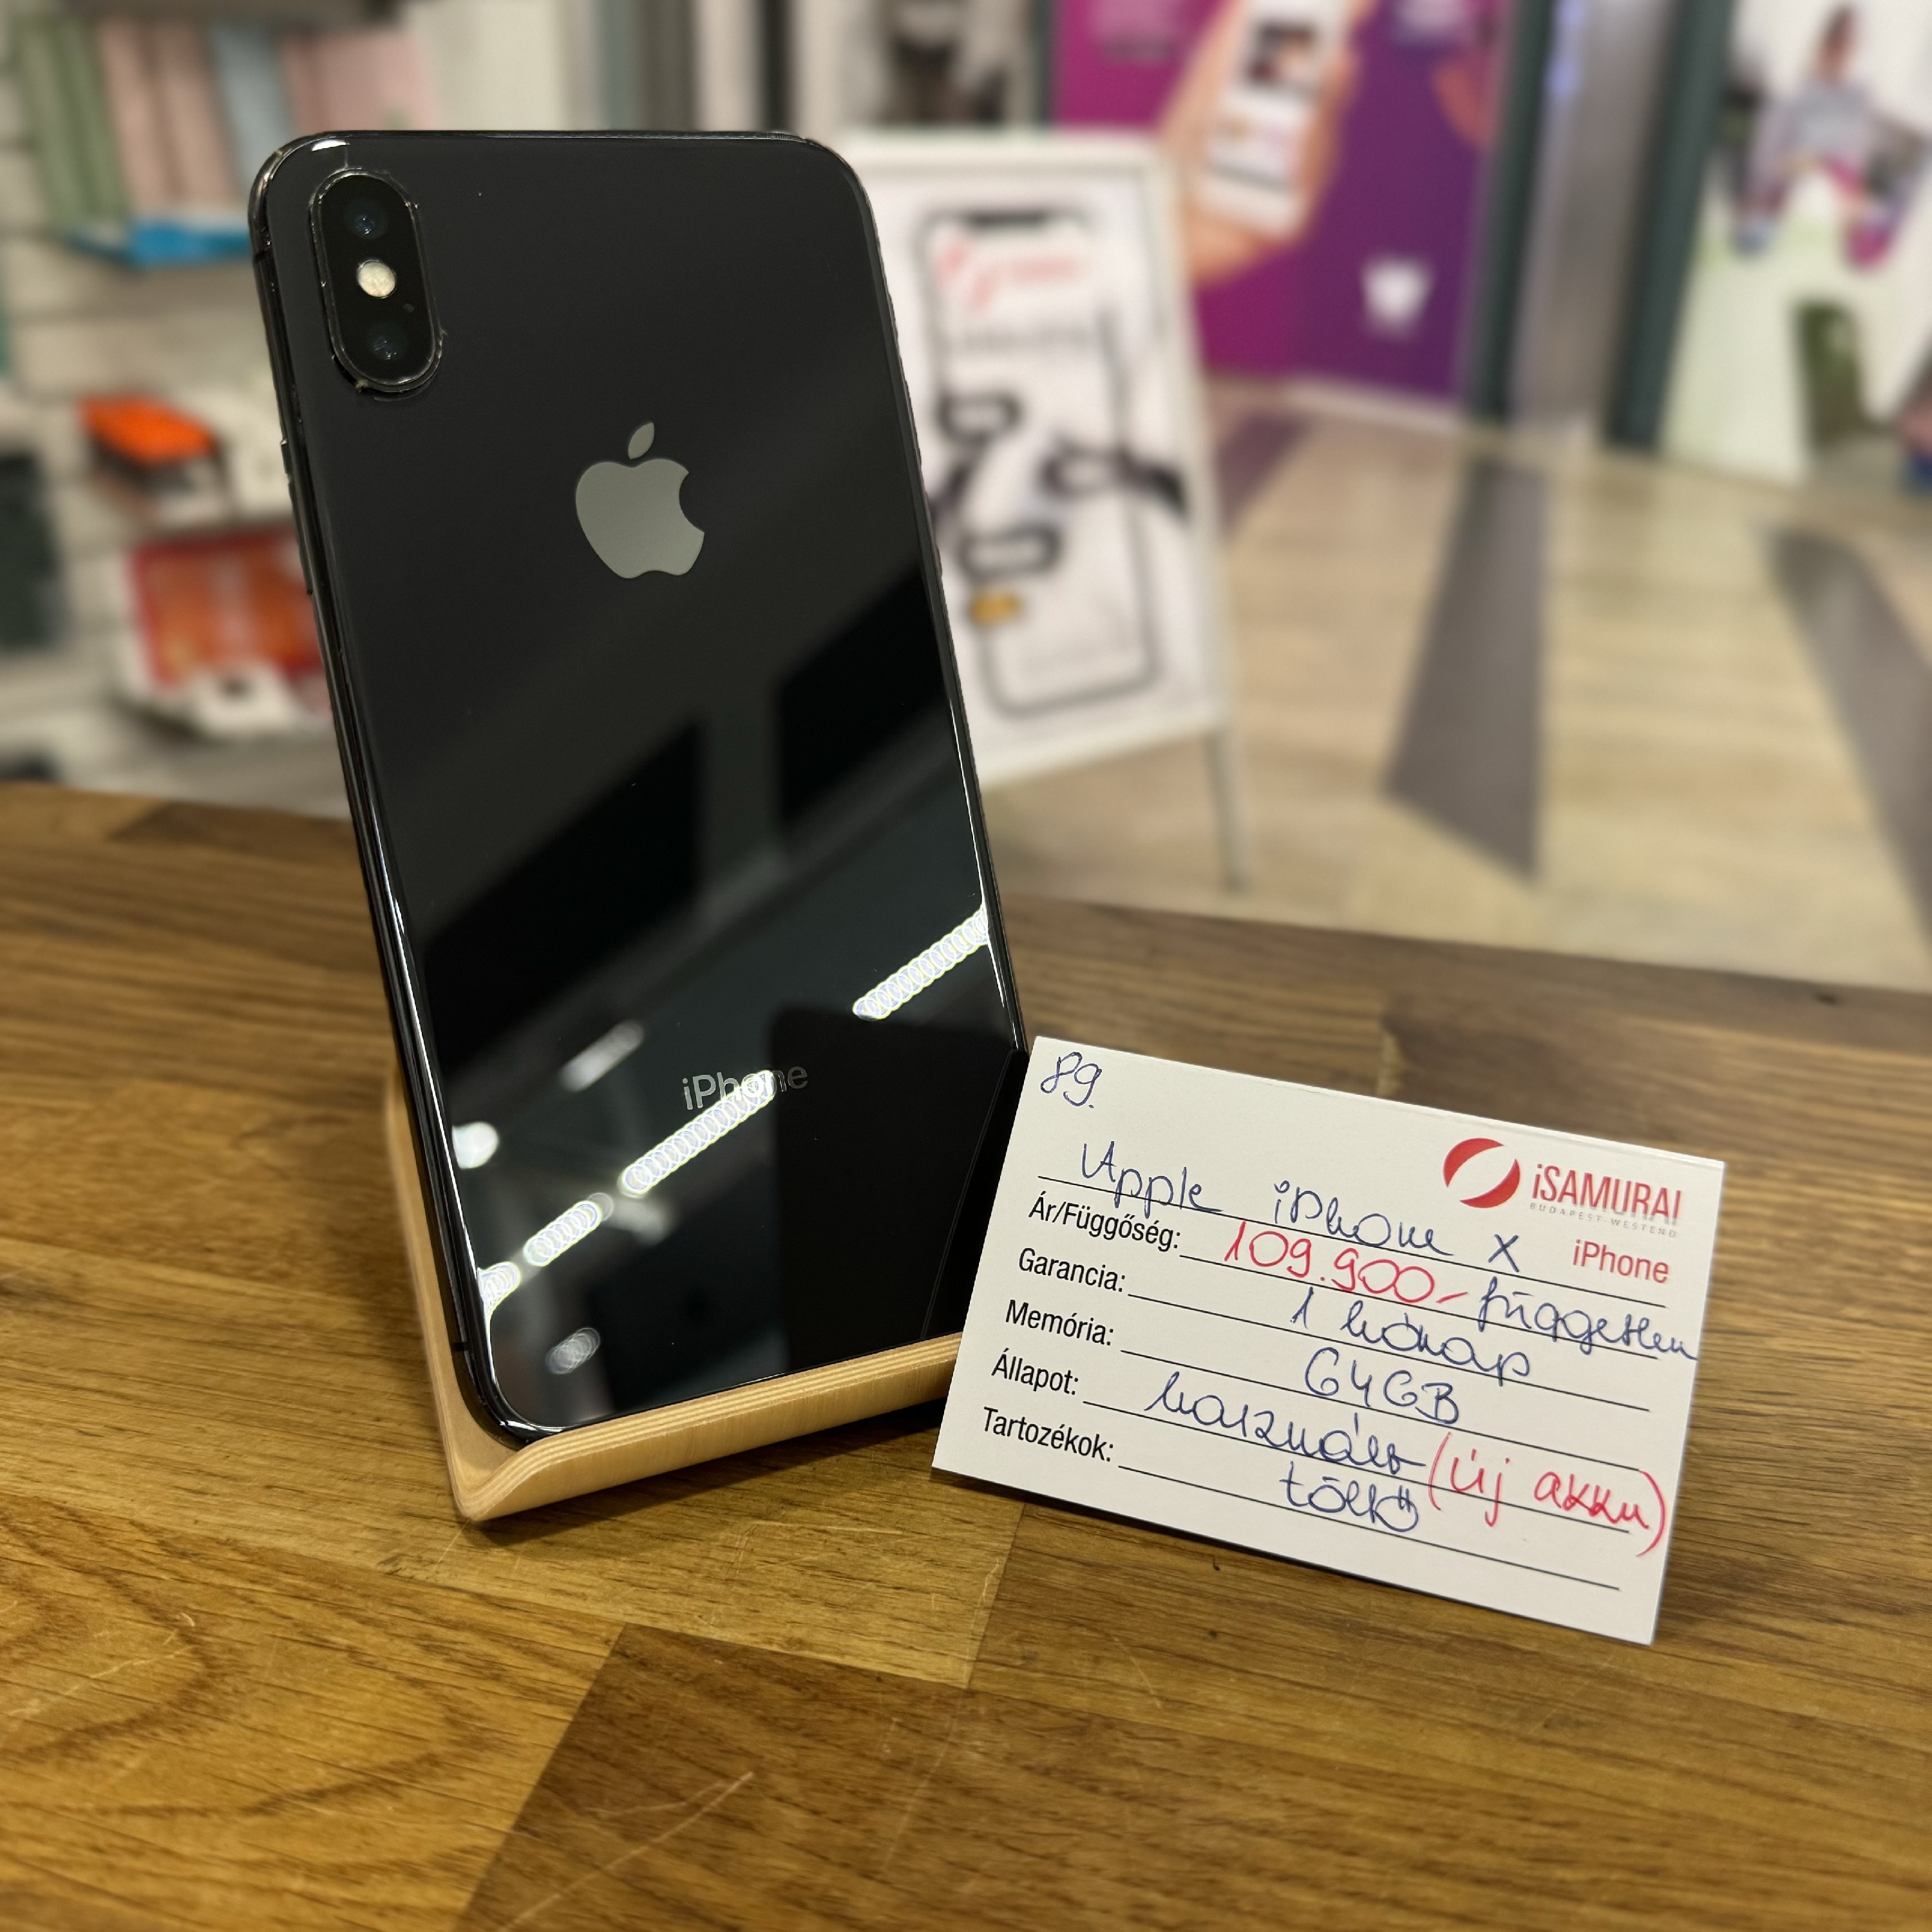 89. Apple iPhone X - 64 GB - Asztroszürke - Kártyafüggetlen - ÚJ AKKU